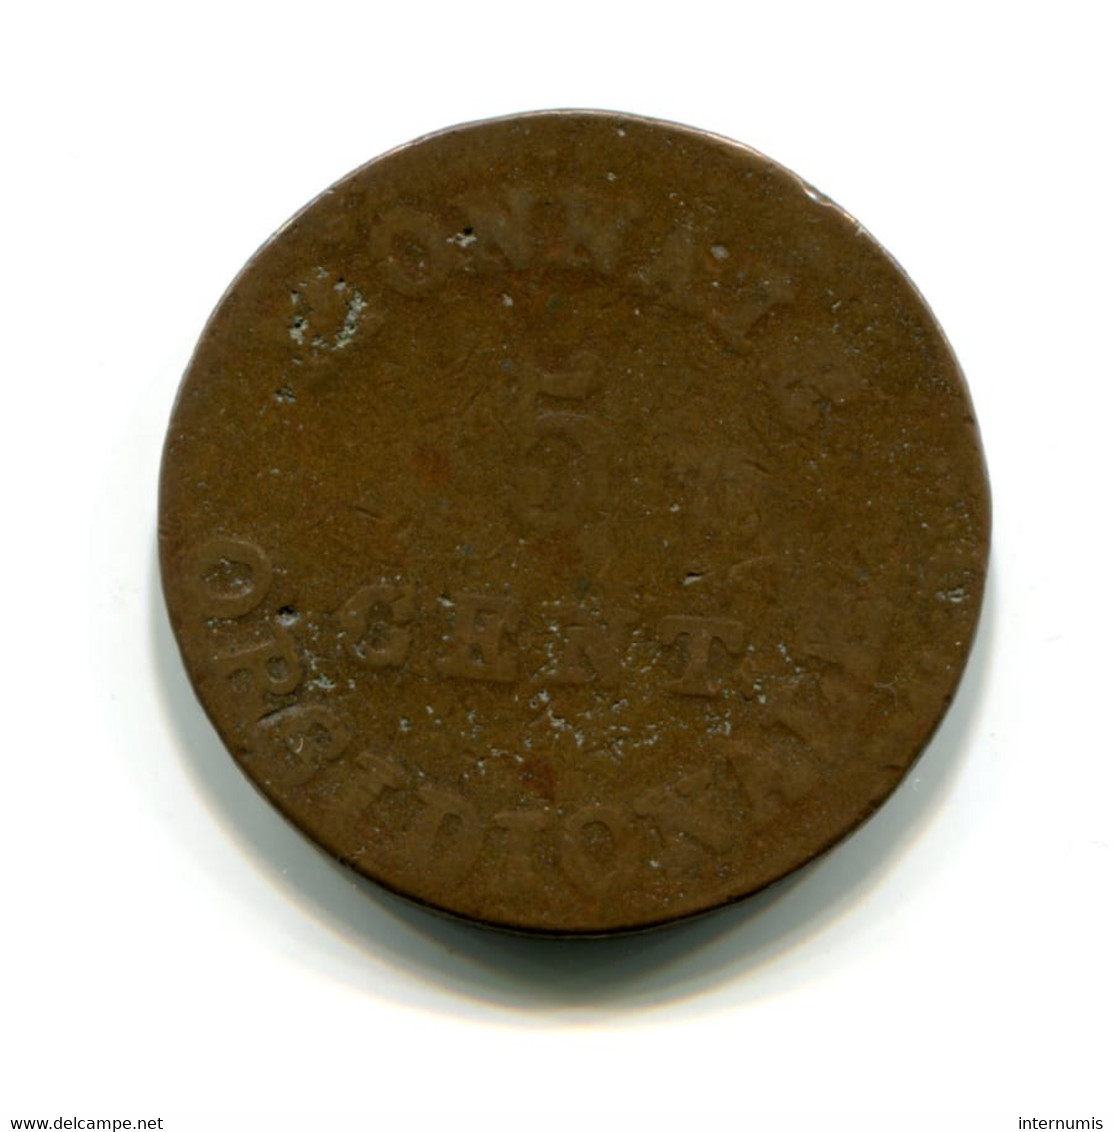 Belgique / Belgium, 5 Centimes, 1814, Siege D'Anvers - Napoléon, Bronze, ,KM#2, F.115?, G.129d, COL.11 - 1814 Siège D’Anvers